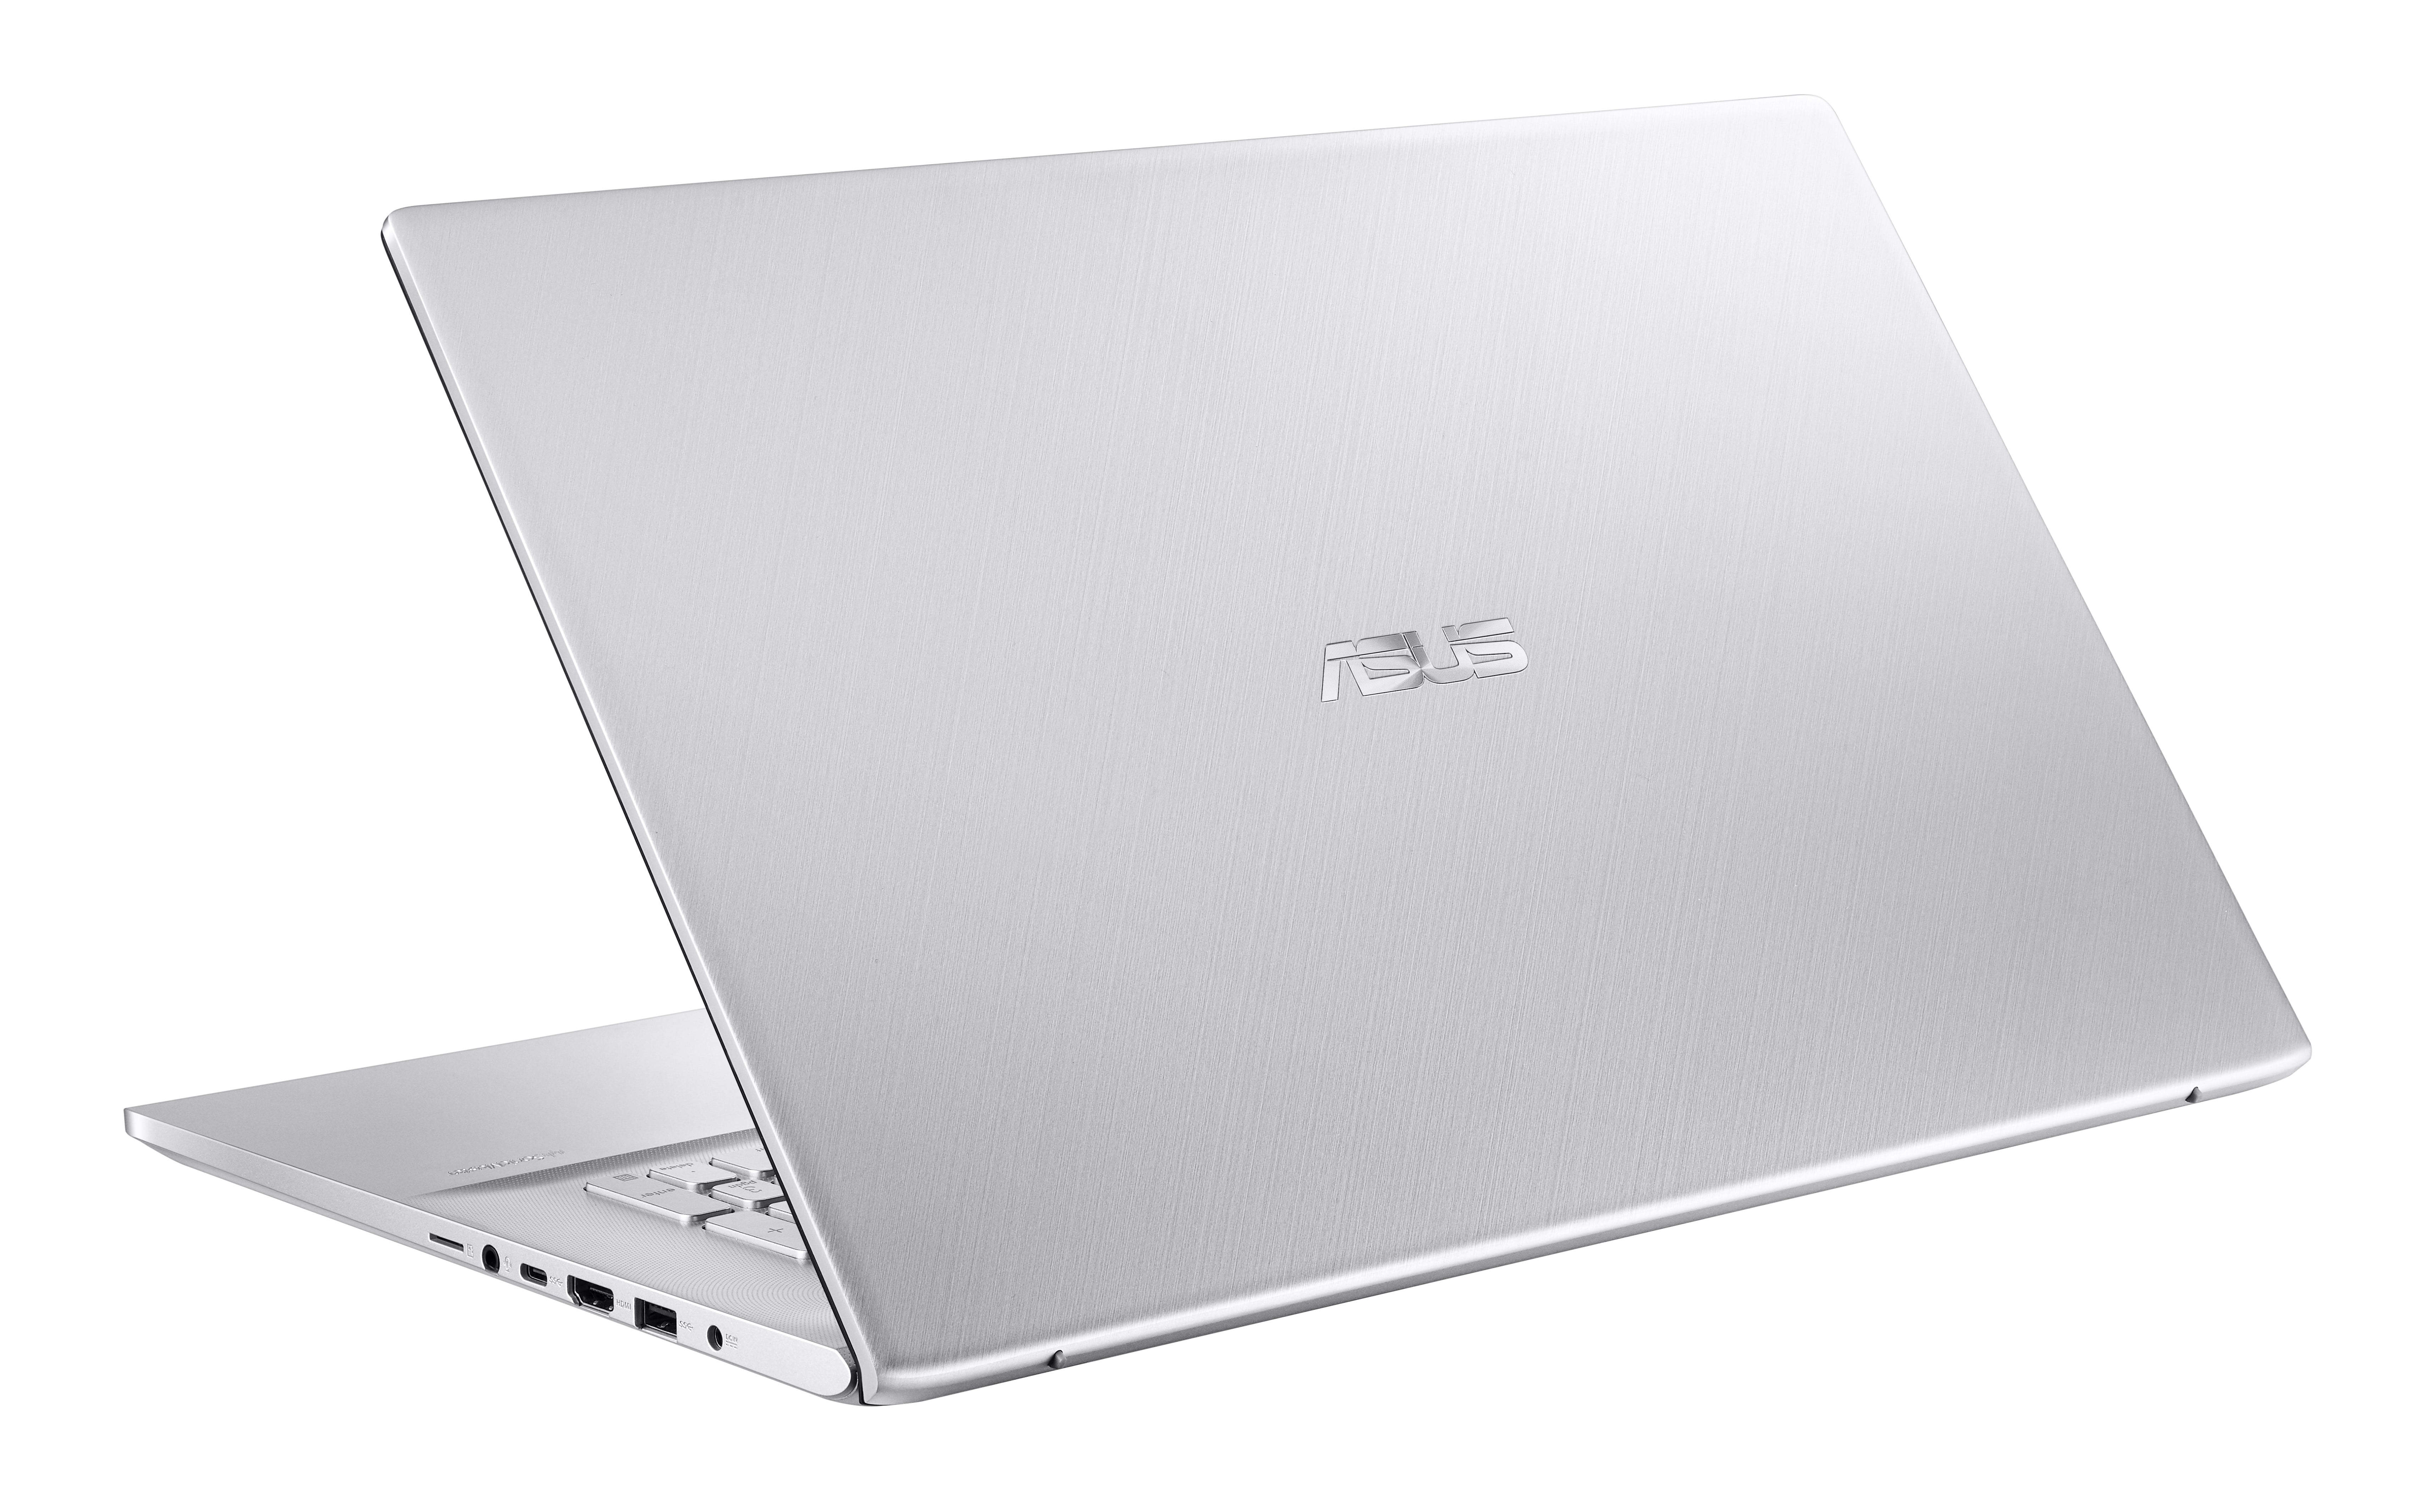 Asus X751SA-TY001T à 439€, PC portable 17 pouces – LaptopSpirit